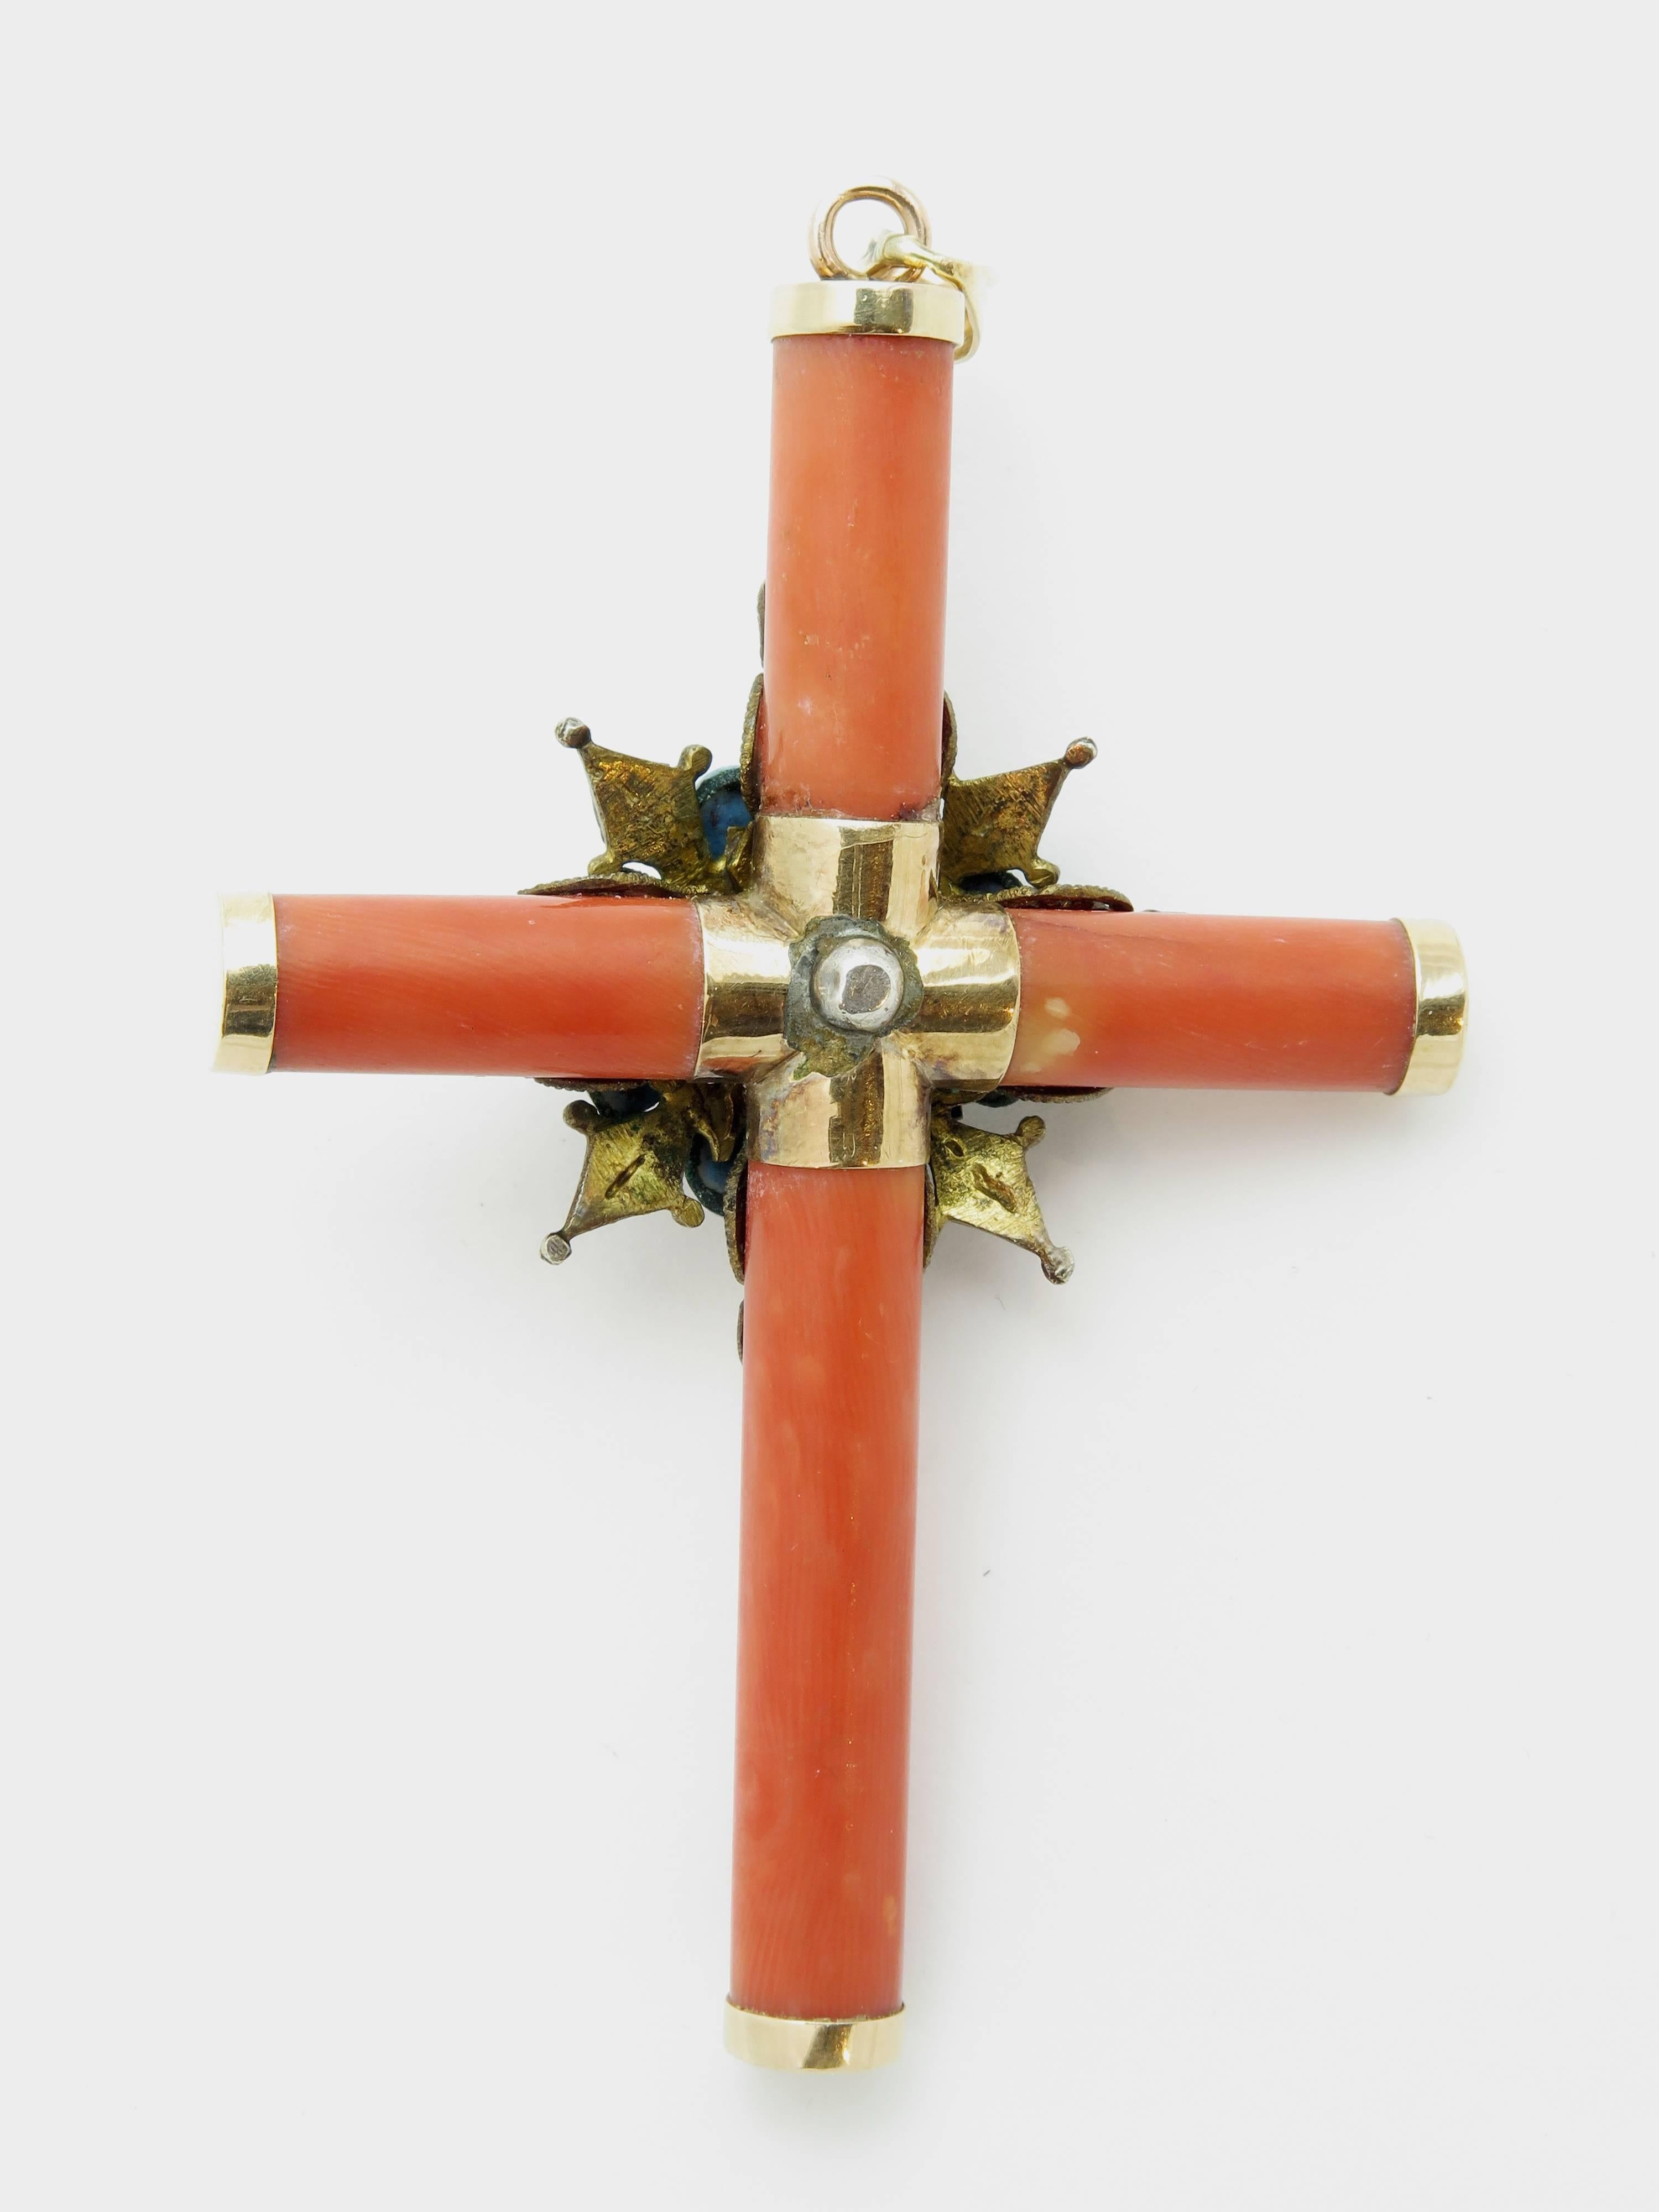 Une étonnante croix de corail formée de morceaux tubulaires de corail rouge-orange, coiffée de montures en or 14k. Elle est recouverte d'une rosette en filigrane d'argent ornée de turquoises, de rubis et de perles.